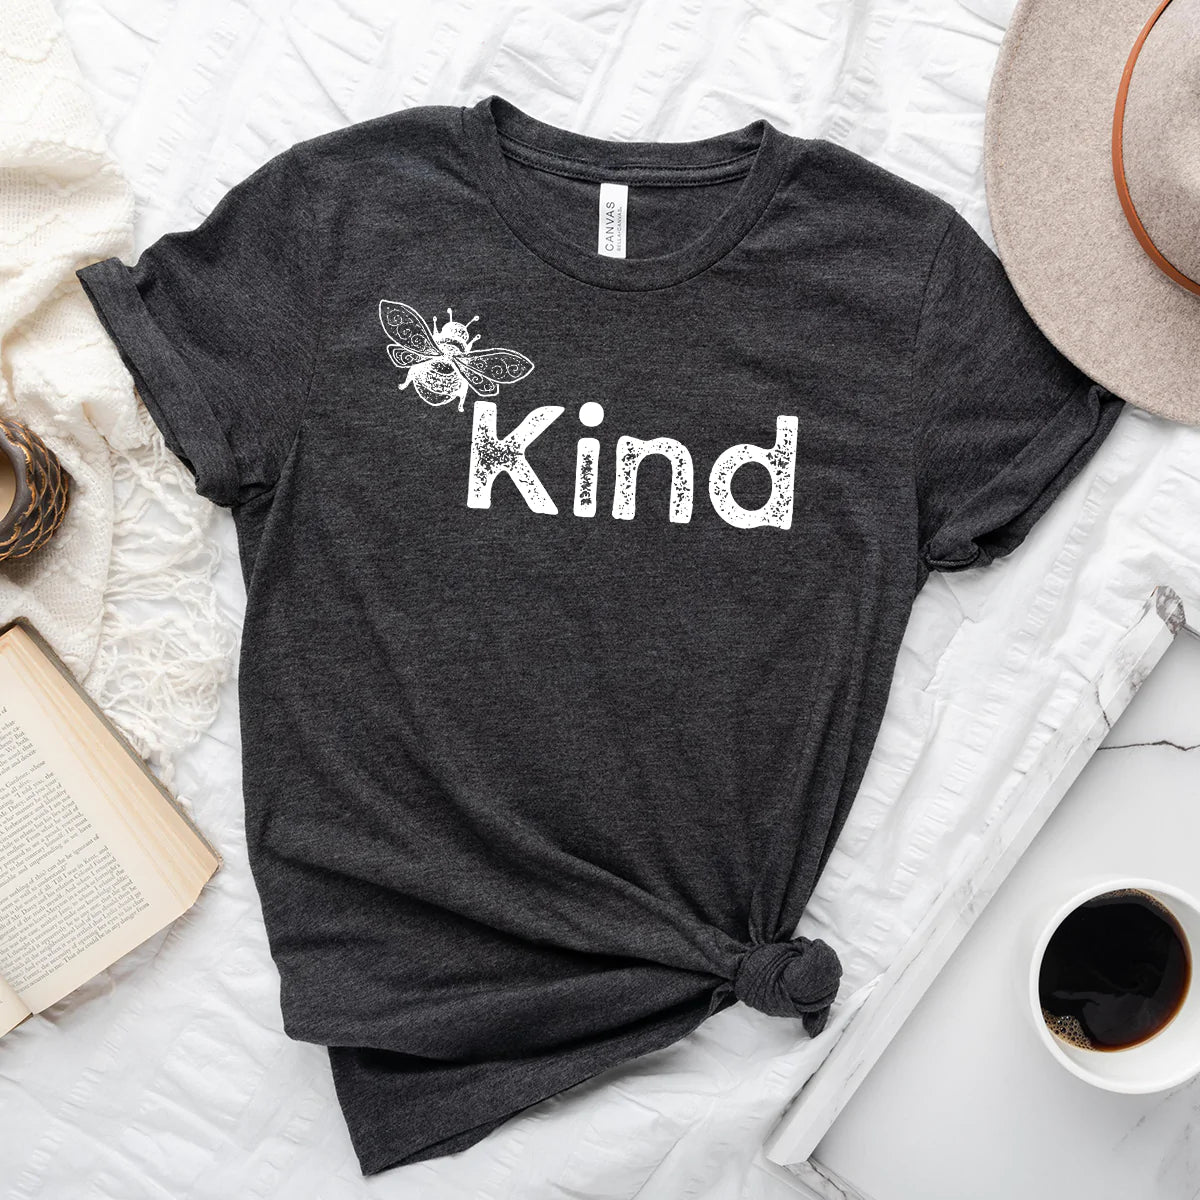 Bee Kind T-Shirt